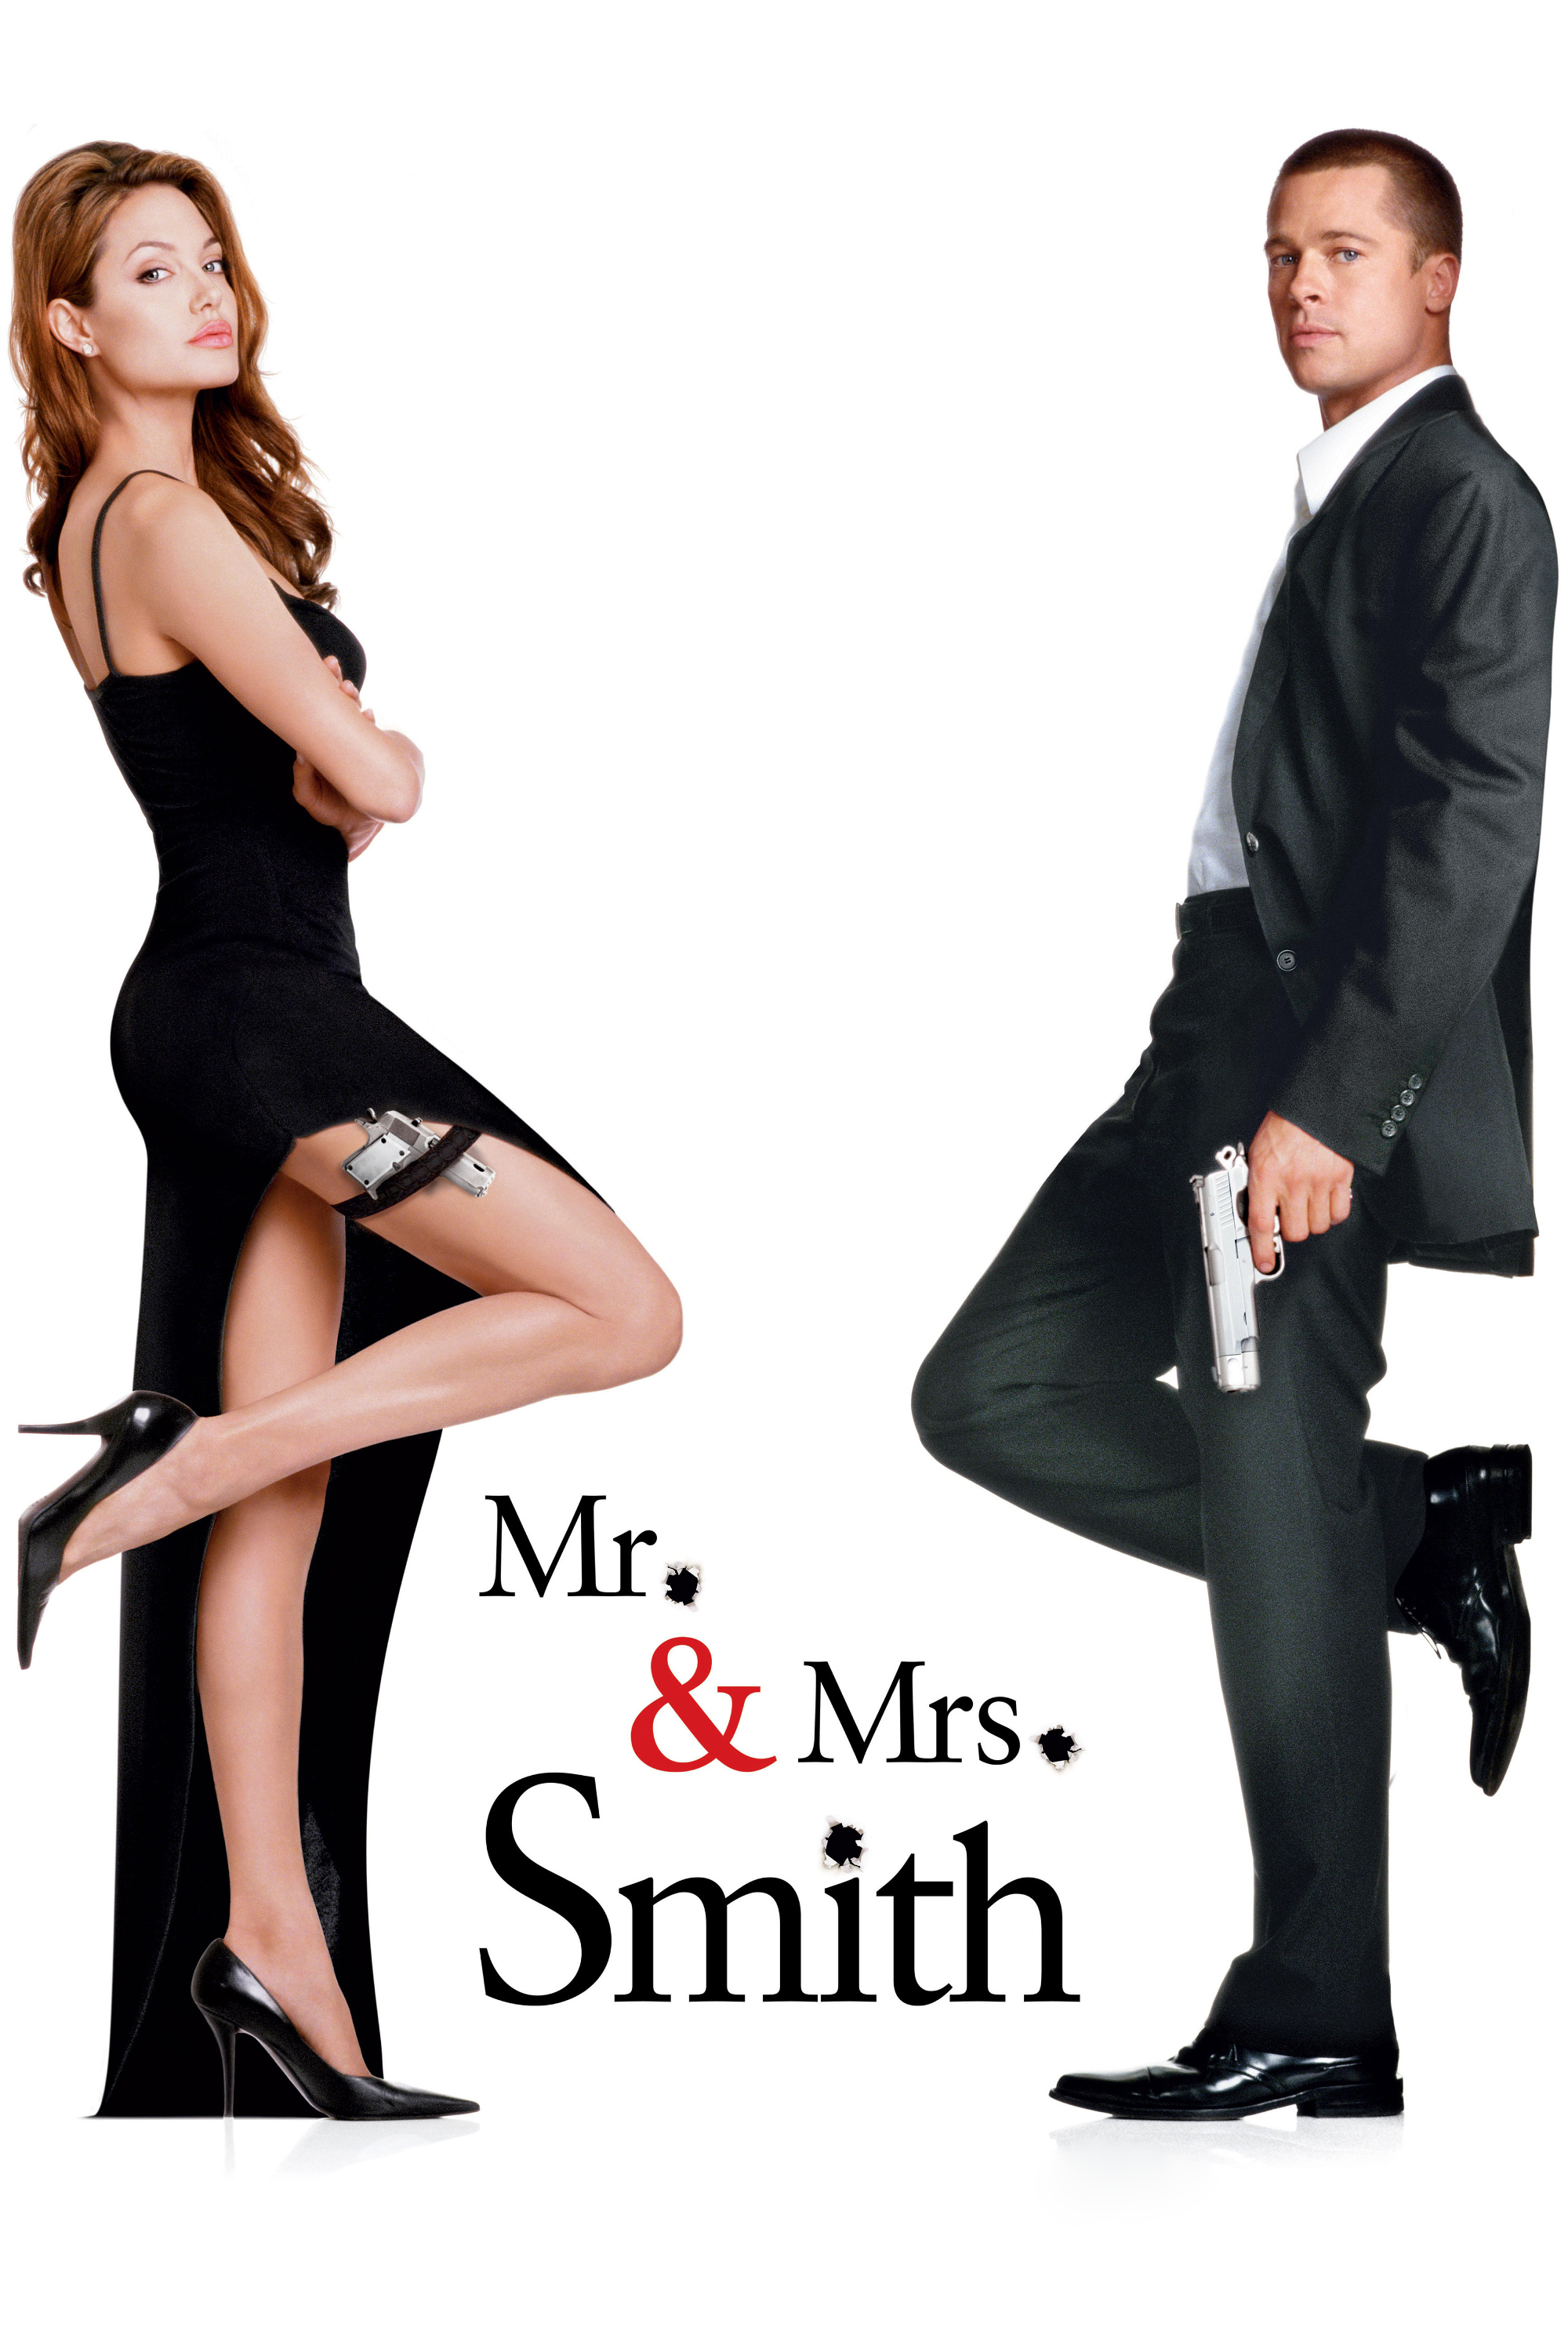 Plakat von "Mr. & Mrs. Smith"